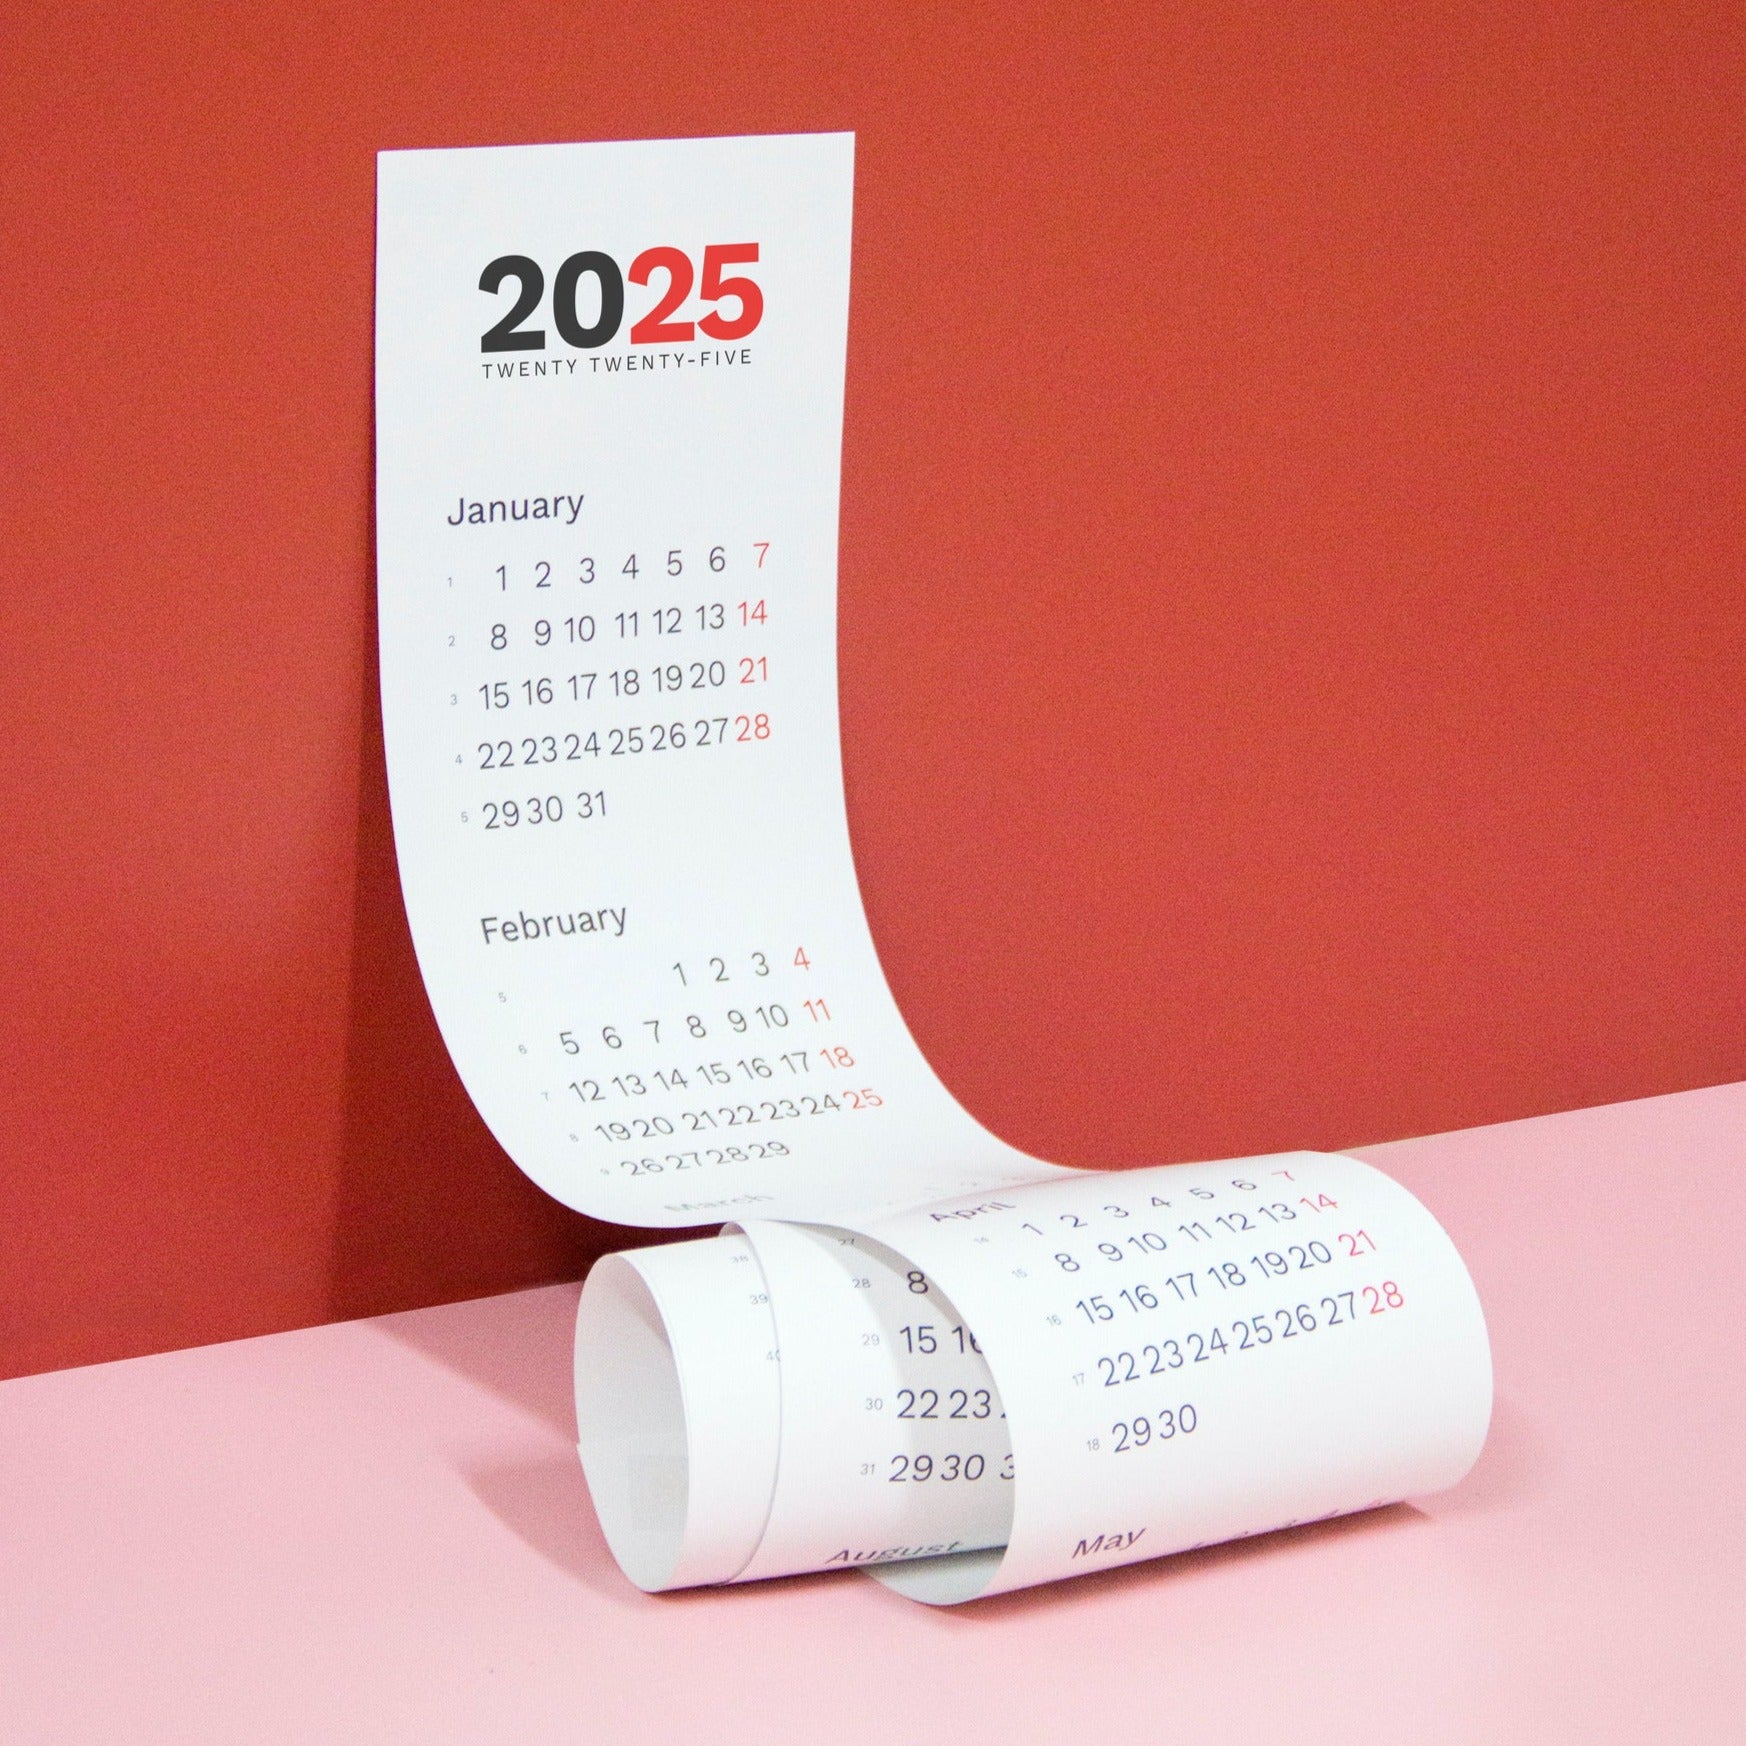 Octàgon design, 2025 vertical calendar. Product.